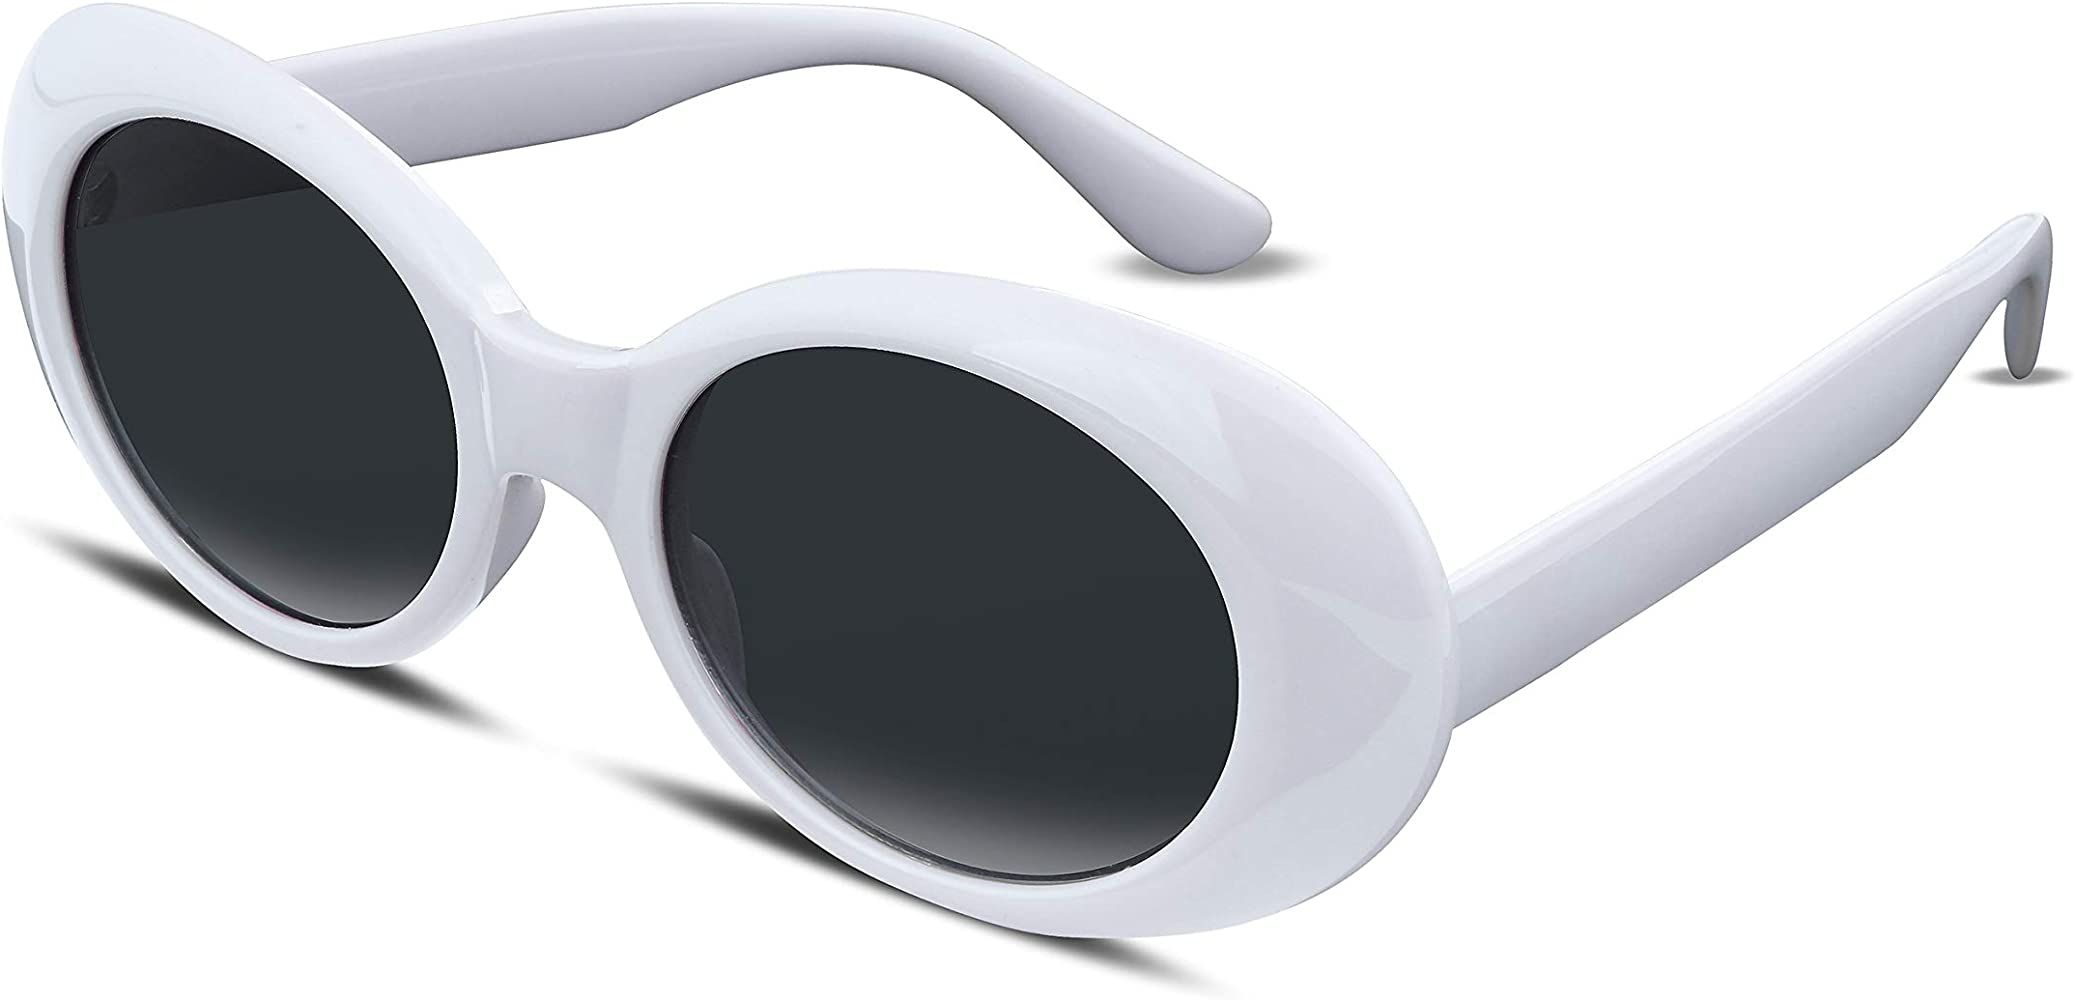 FEISEDY Clout Goggles Sunglasses Retro Oval Women Sunglasses UV400 B2253 | Amazon (US)